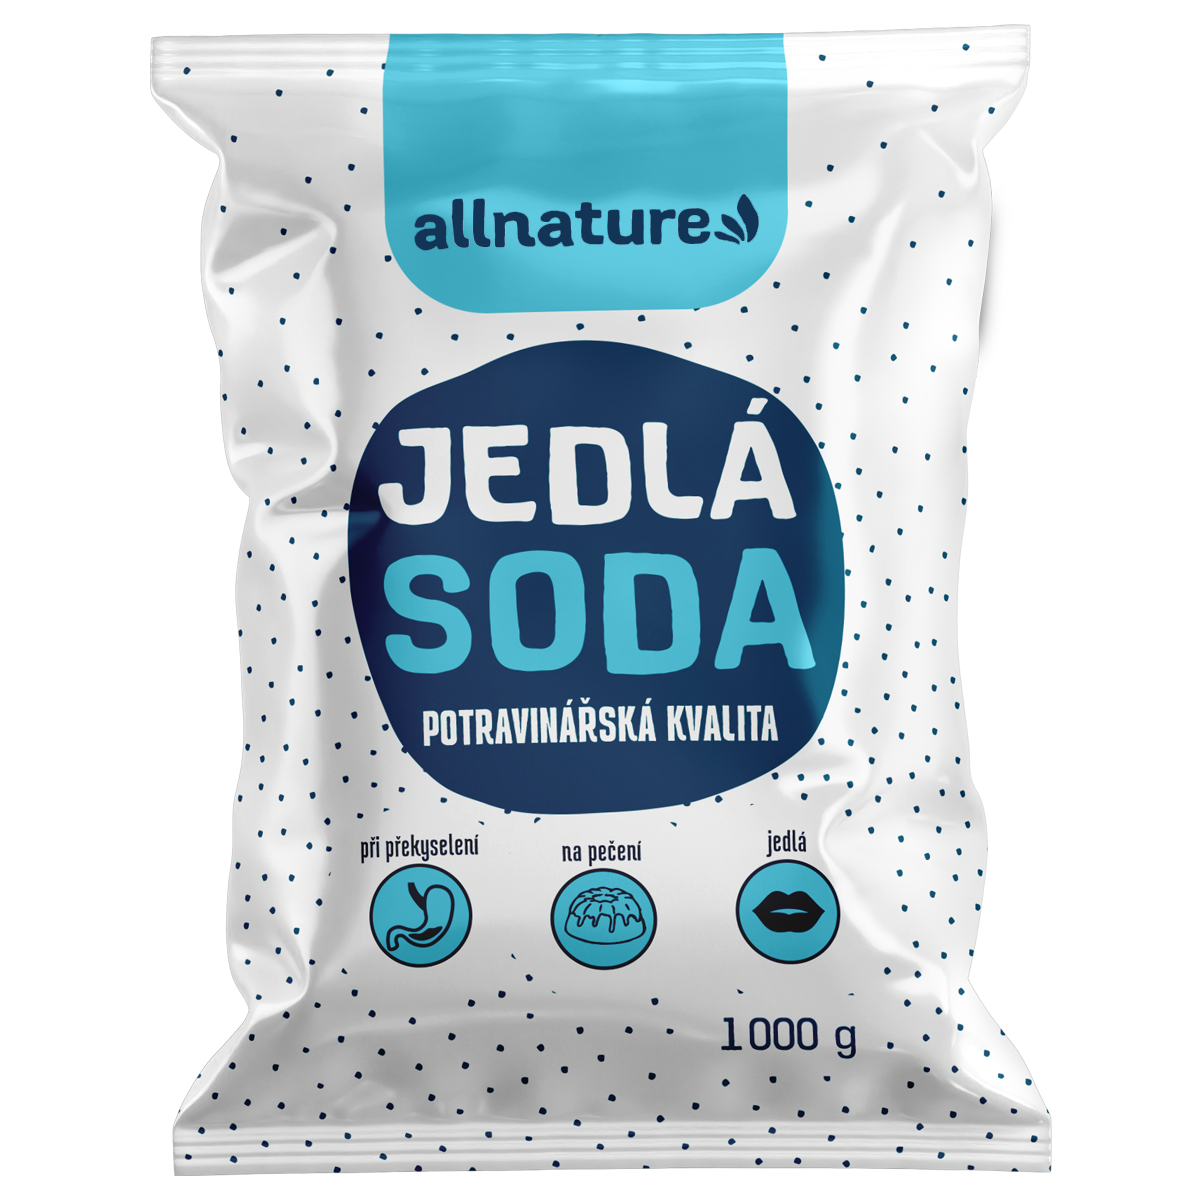 Allnature Jedlá soda (1 000 g) - II. jakost - potravinářská kvalita